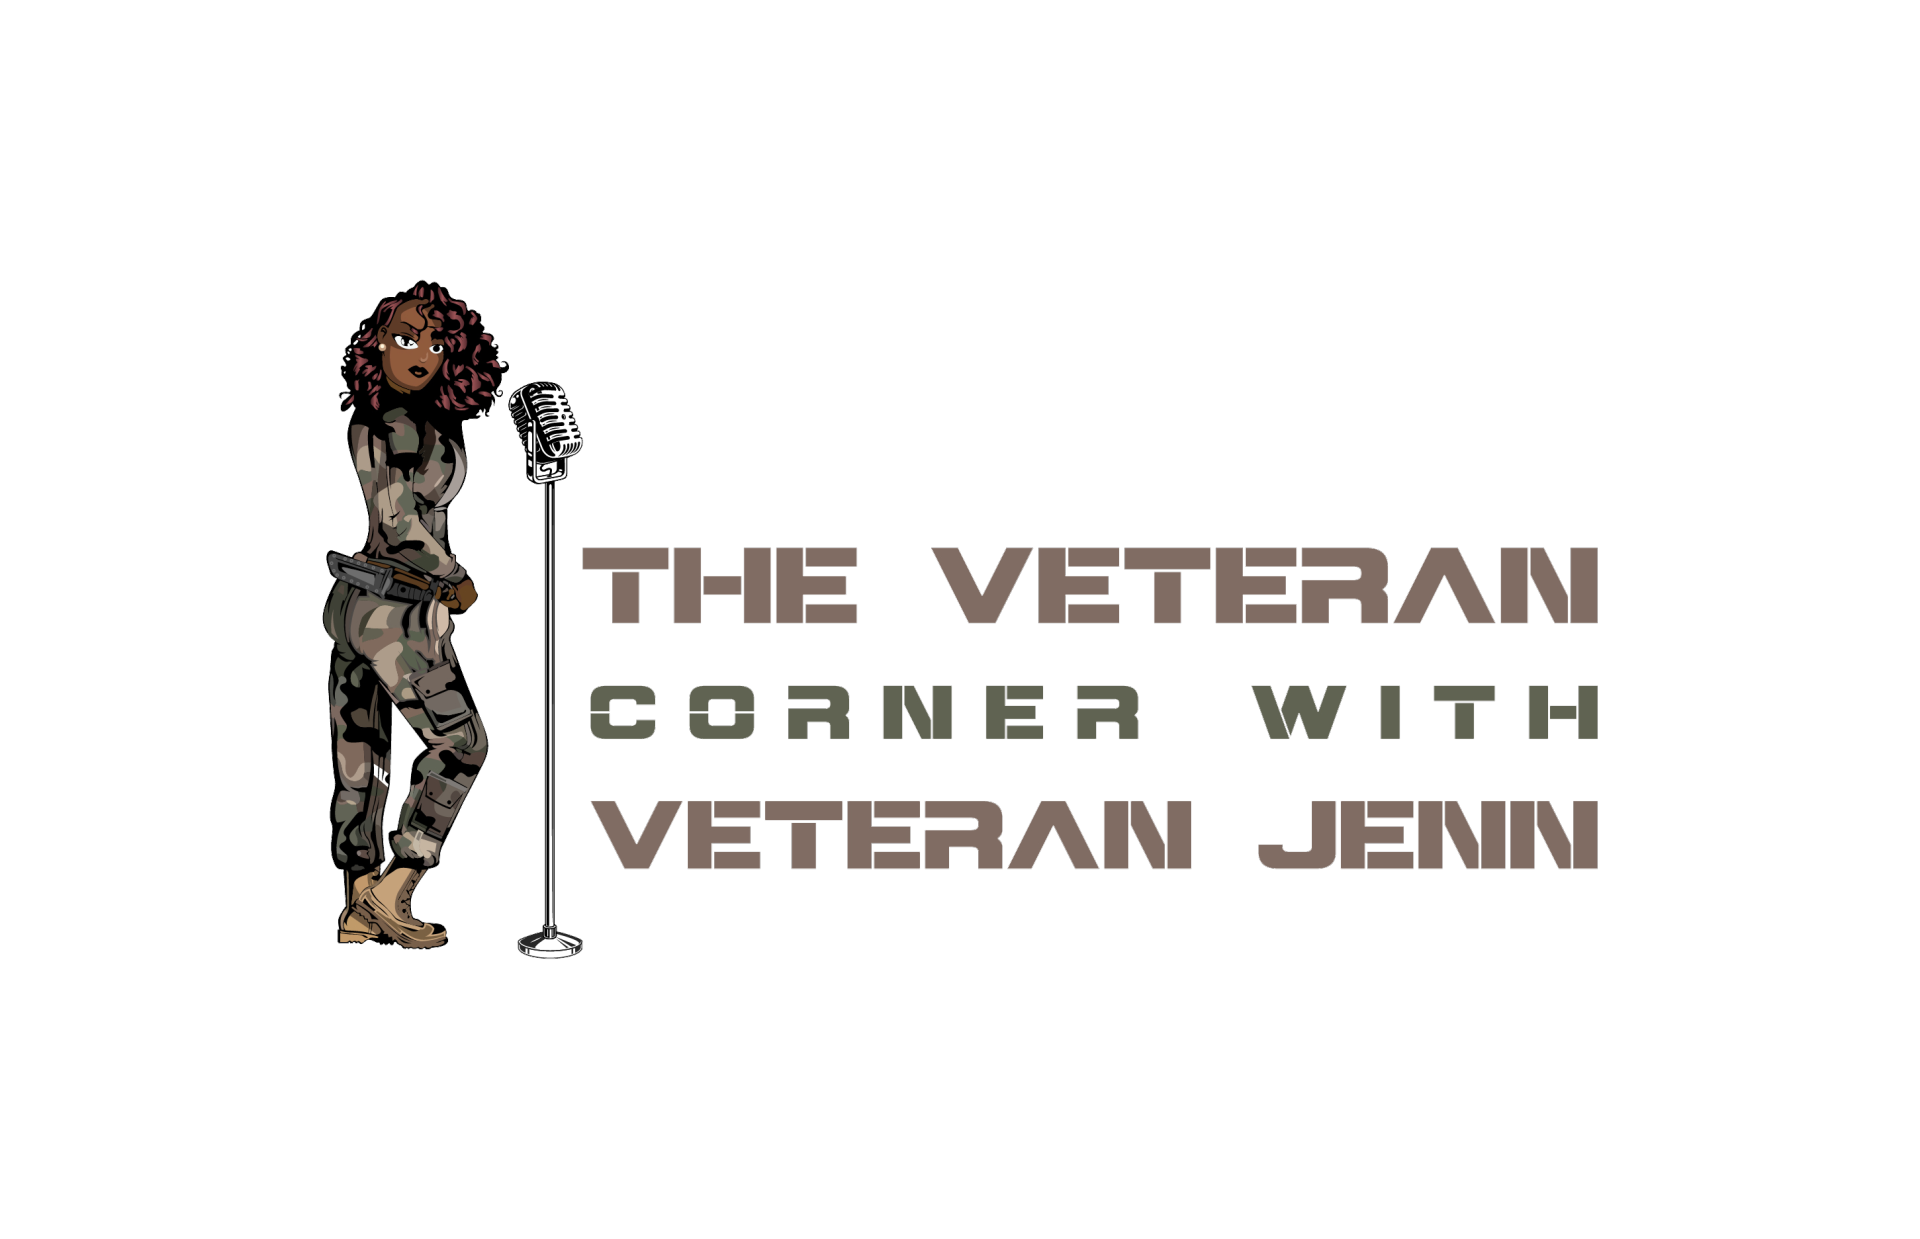 The Veterans Corner with Veteran Jenn